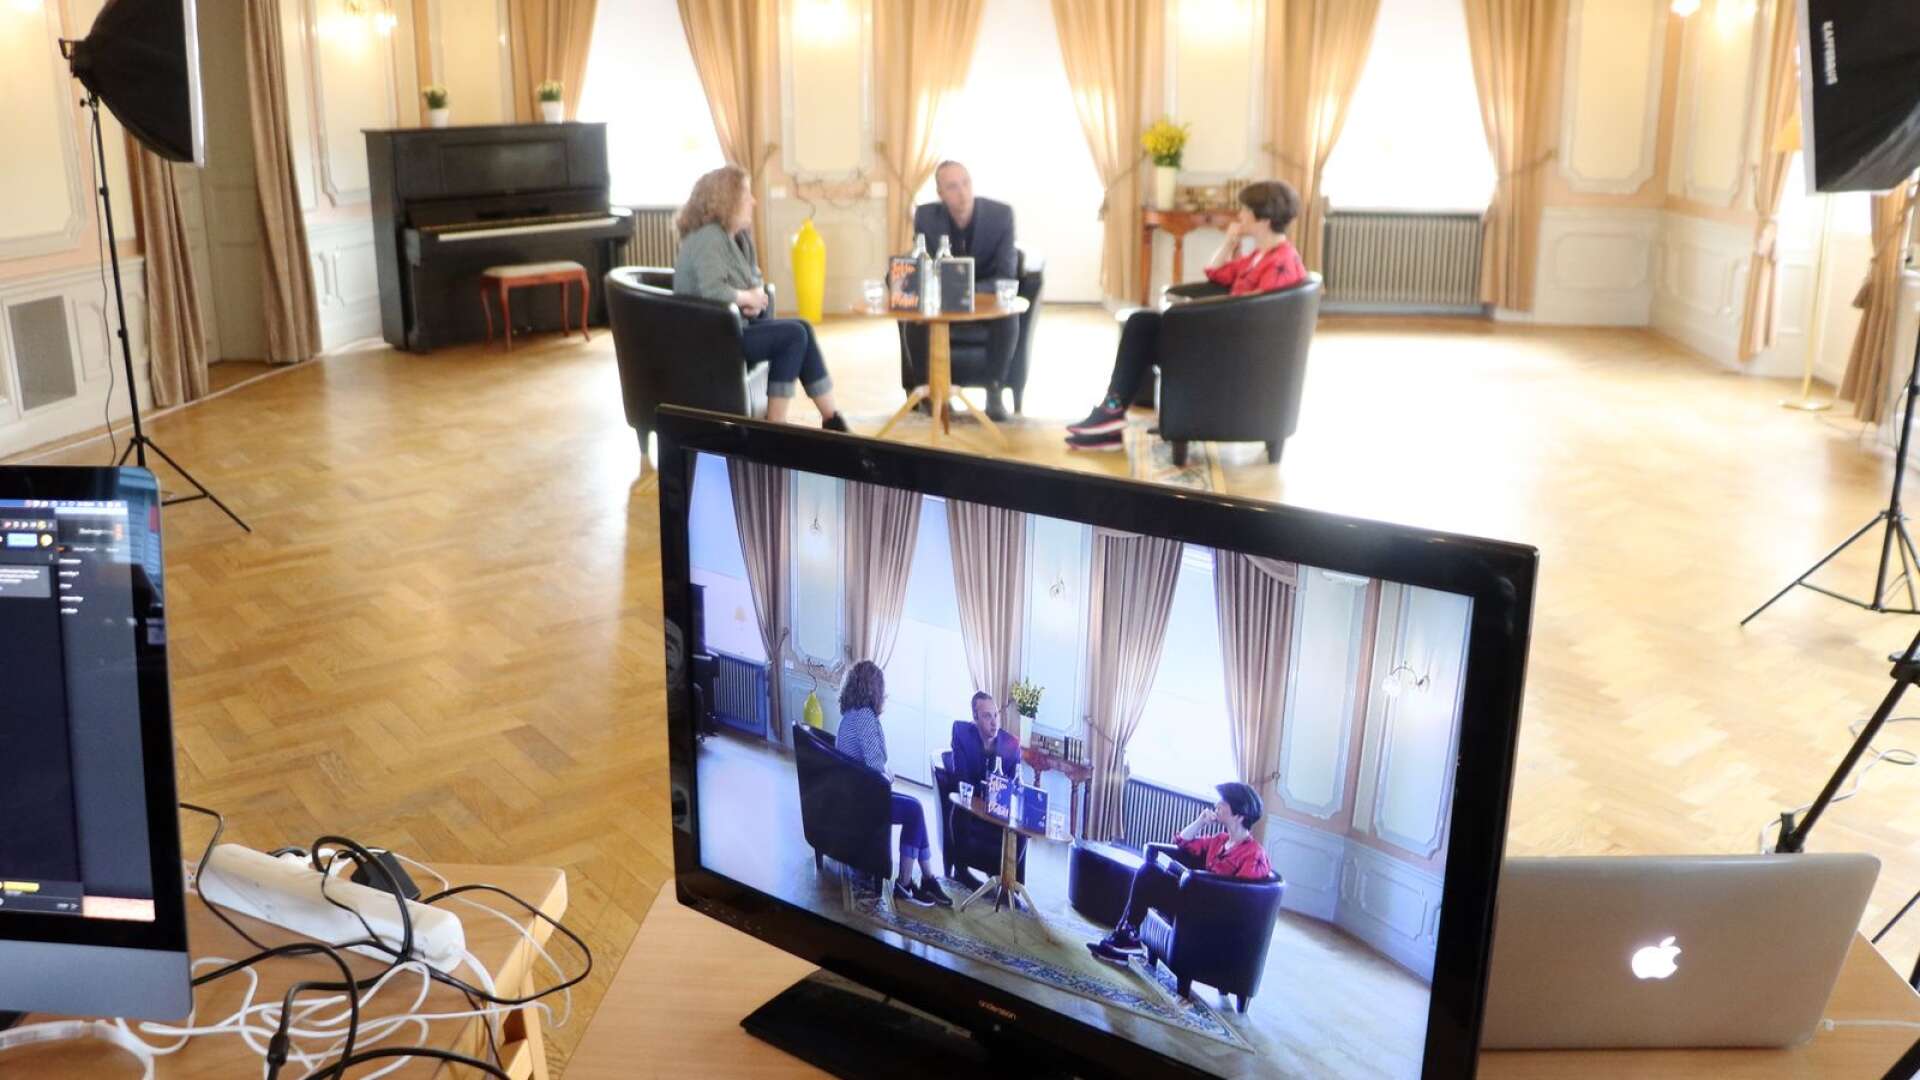 Författarsamtalen under de digitala bokdagarna sändes live från stadshotellet i Åmål. Sist ut var Martin Schibbye och Anna-Karin Palm.